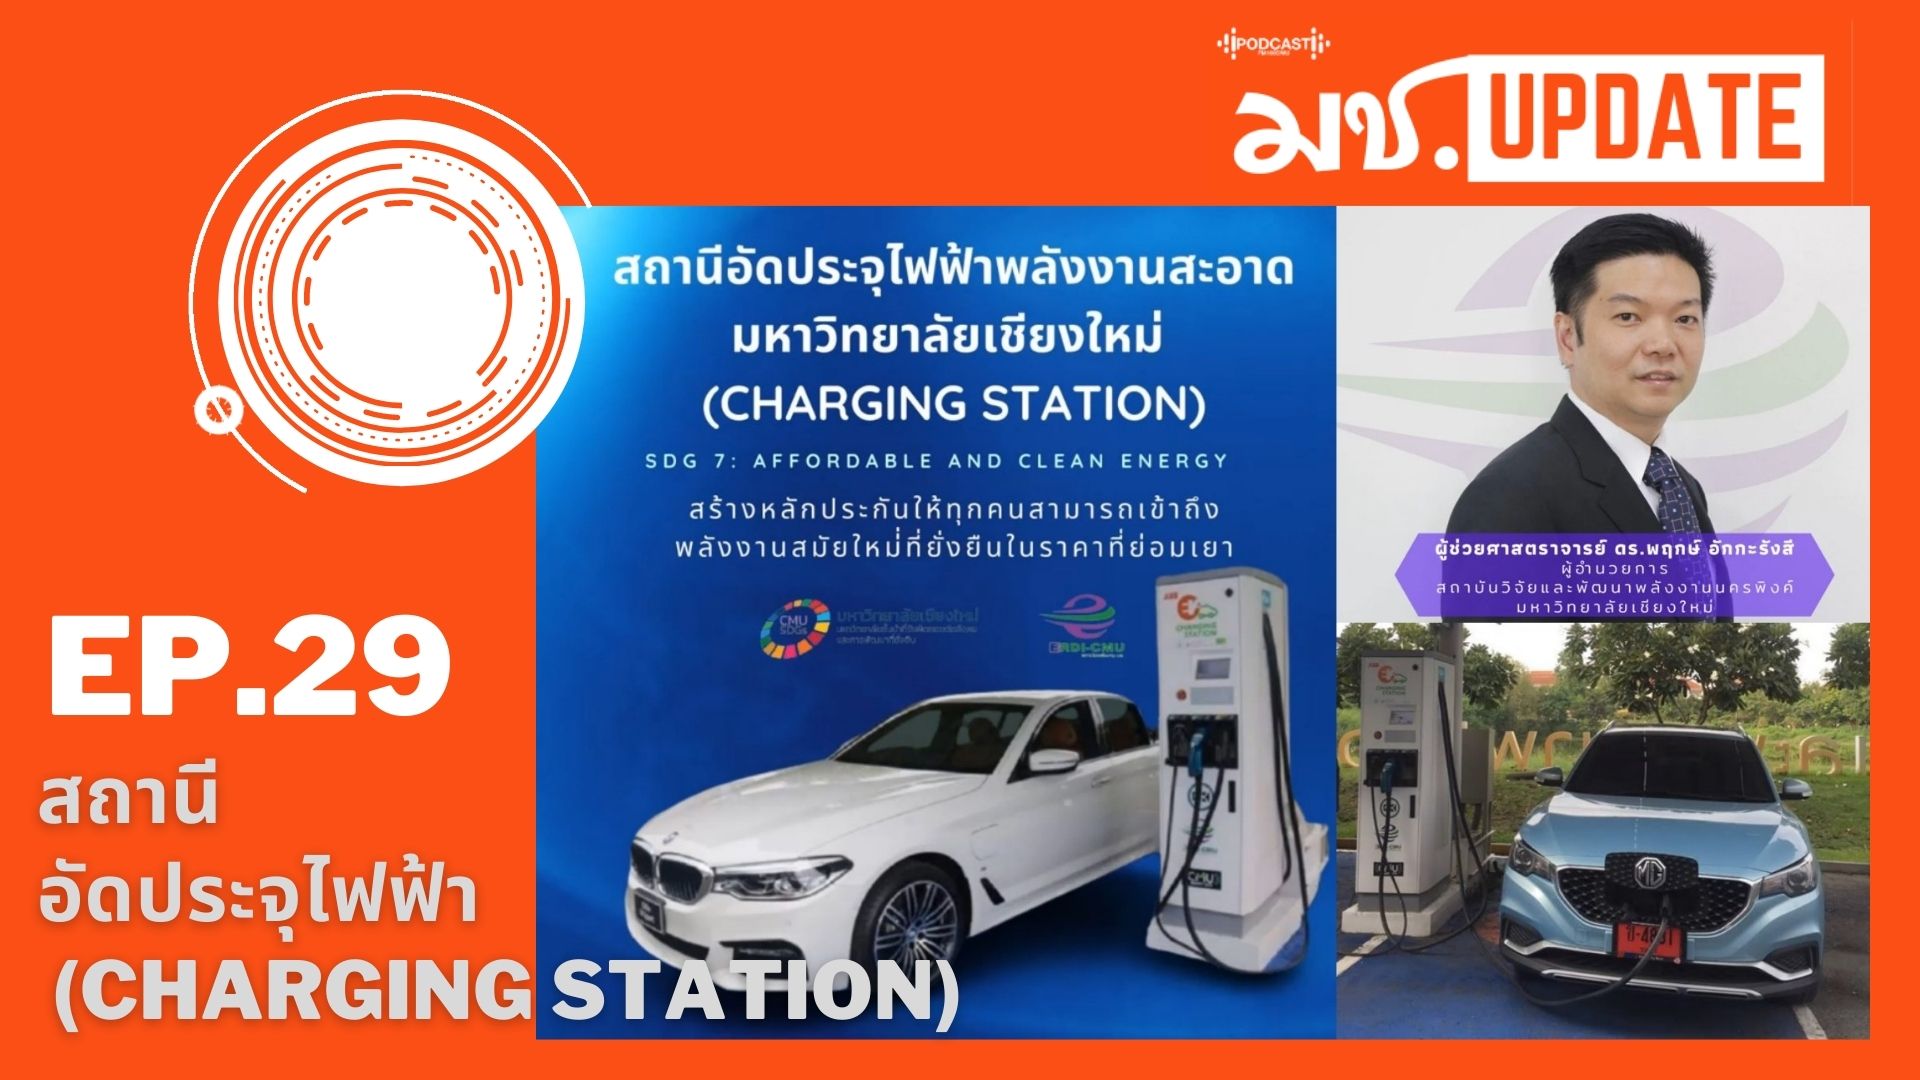 มช. Update Ep.29 สถานีอัดประจุไฟฟ้า (Charging Station) มช. ตอบโจทย์ SDG 7